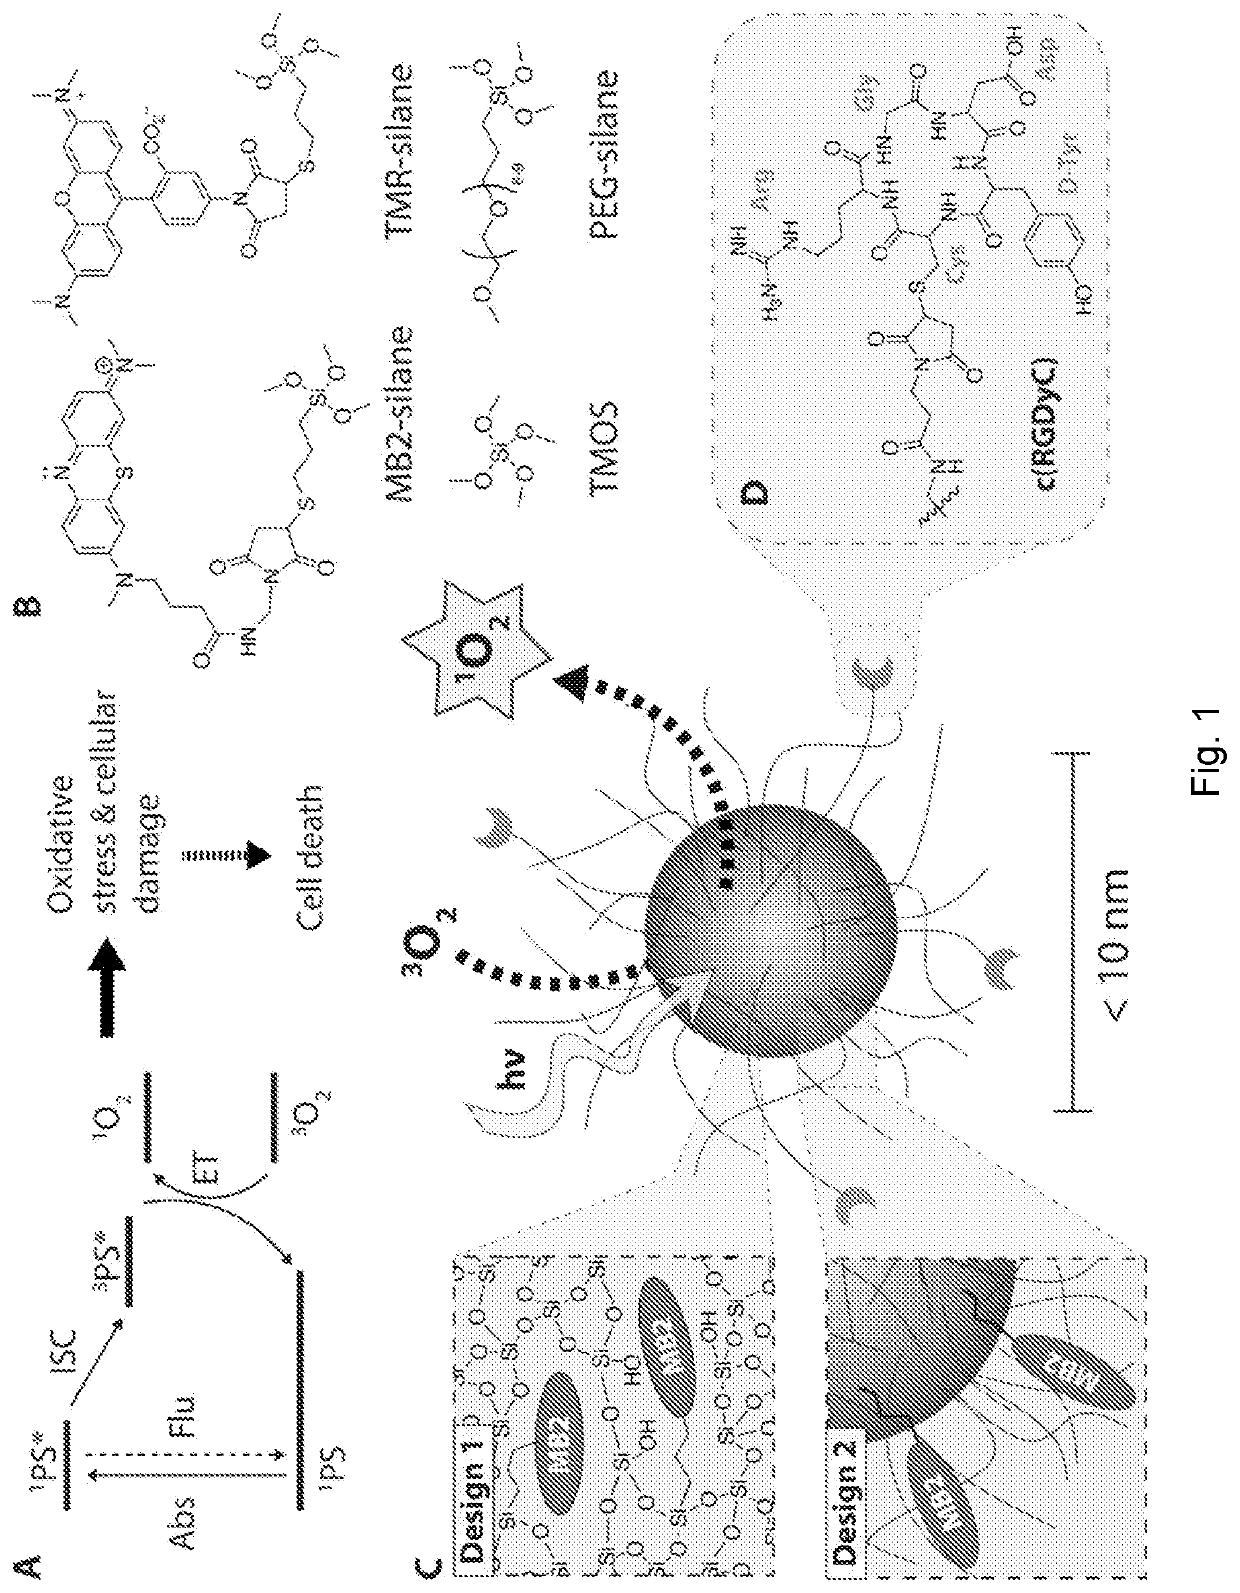 Inorganic nanophotosensitizers and methods of making and using same